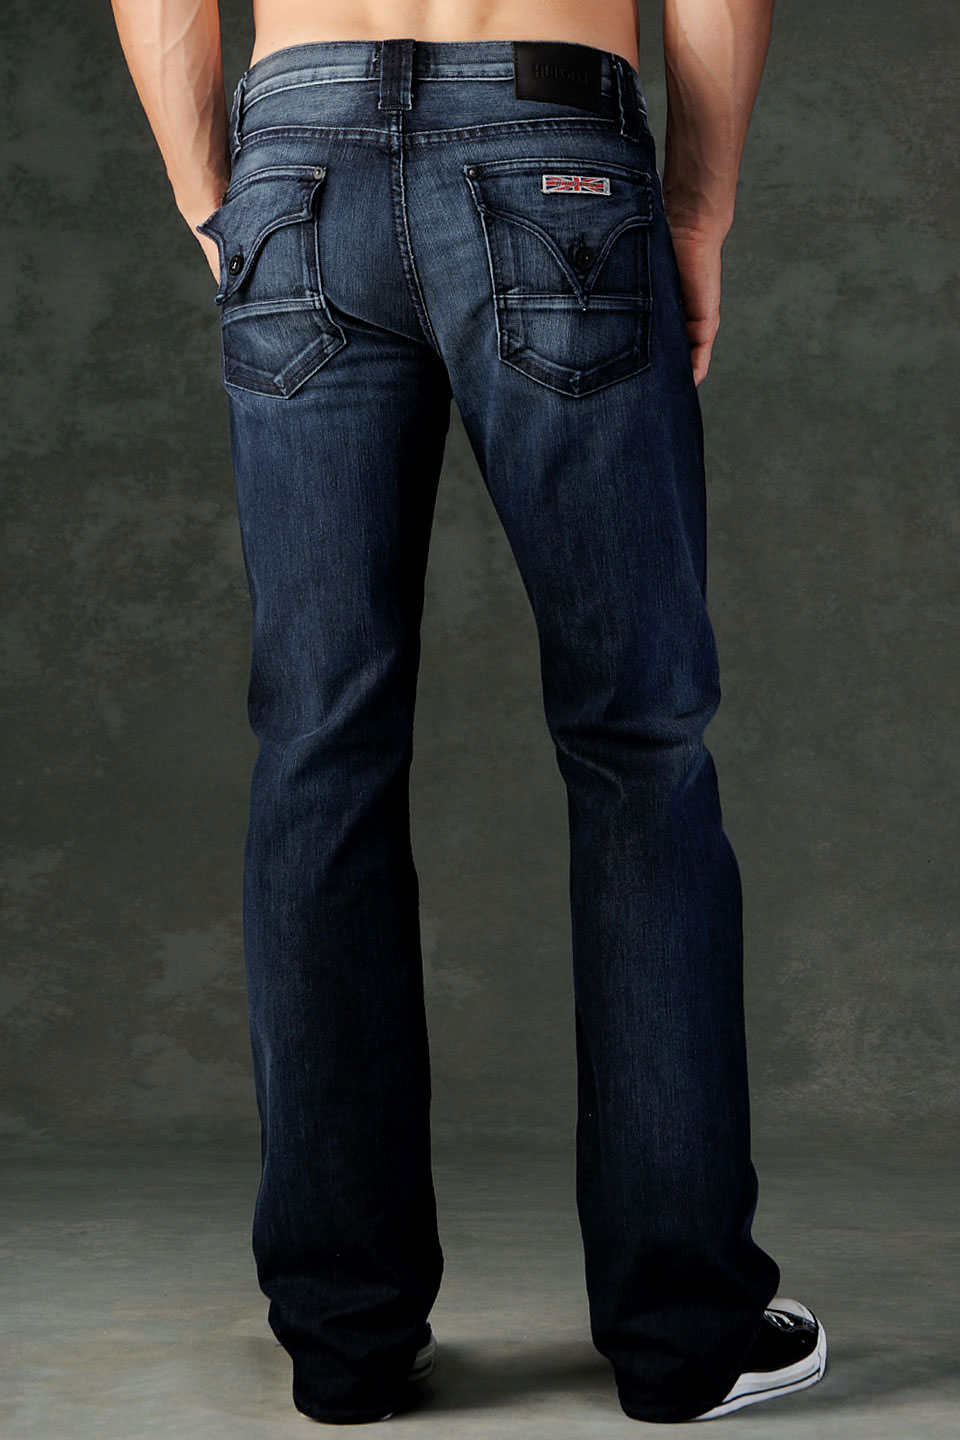 Hudson Jeans Webber Flap Pocket Bootcut in Blue for Men